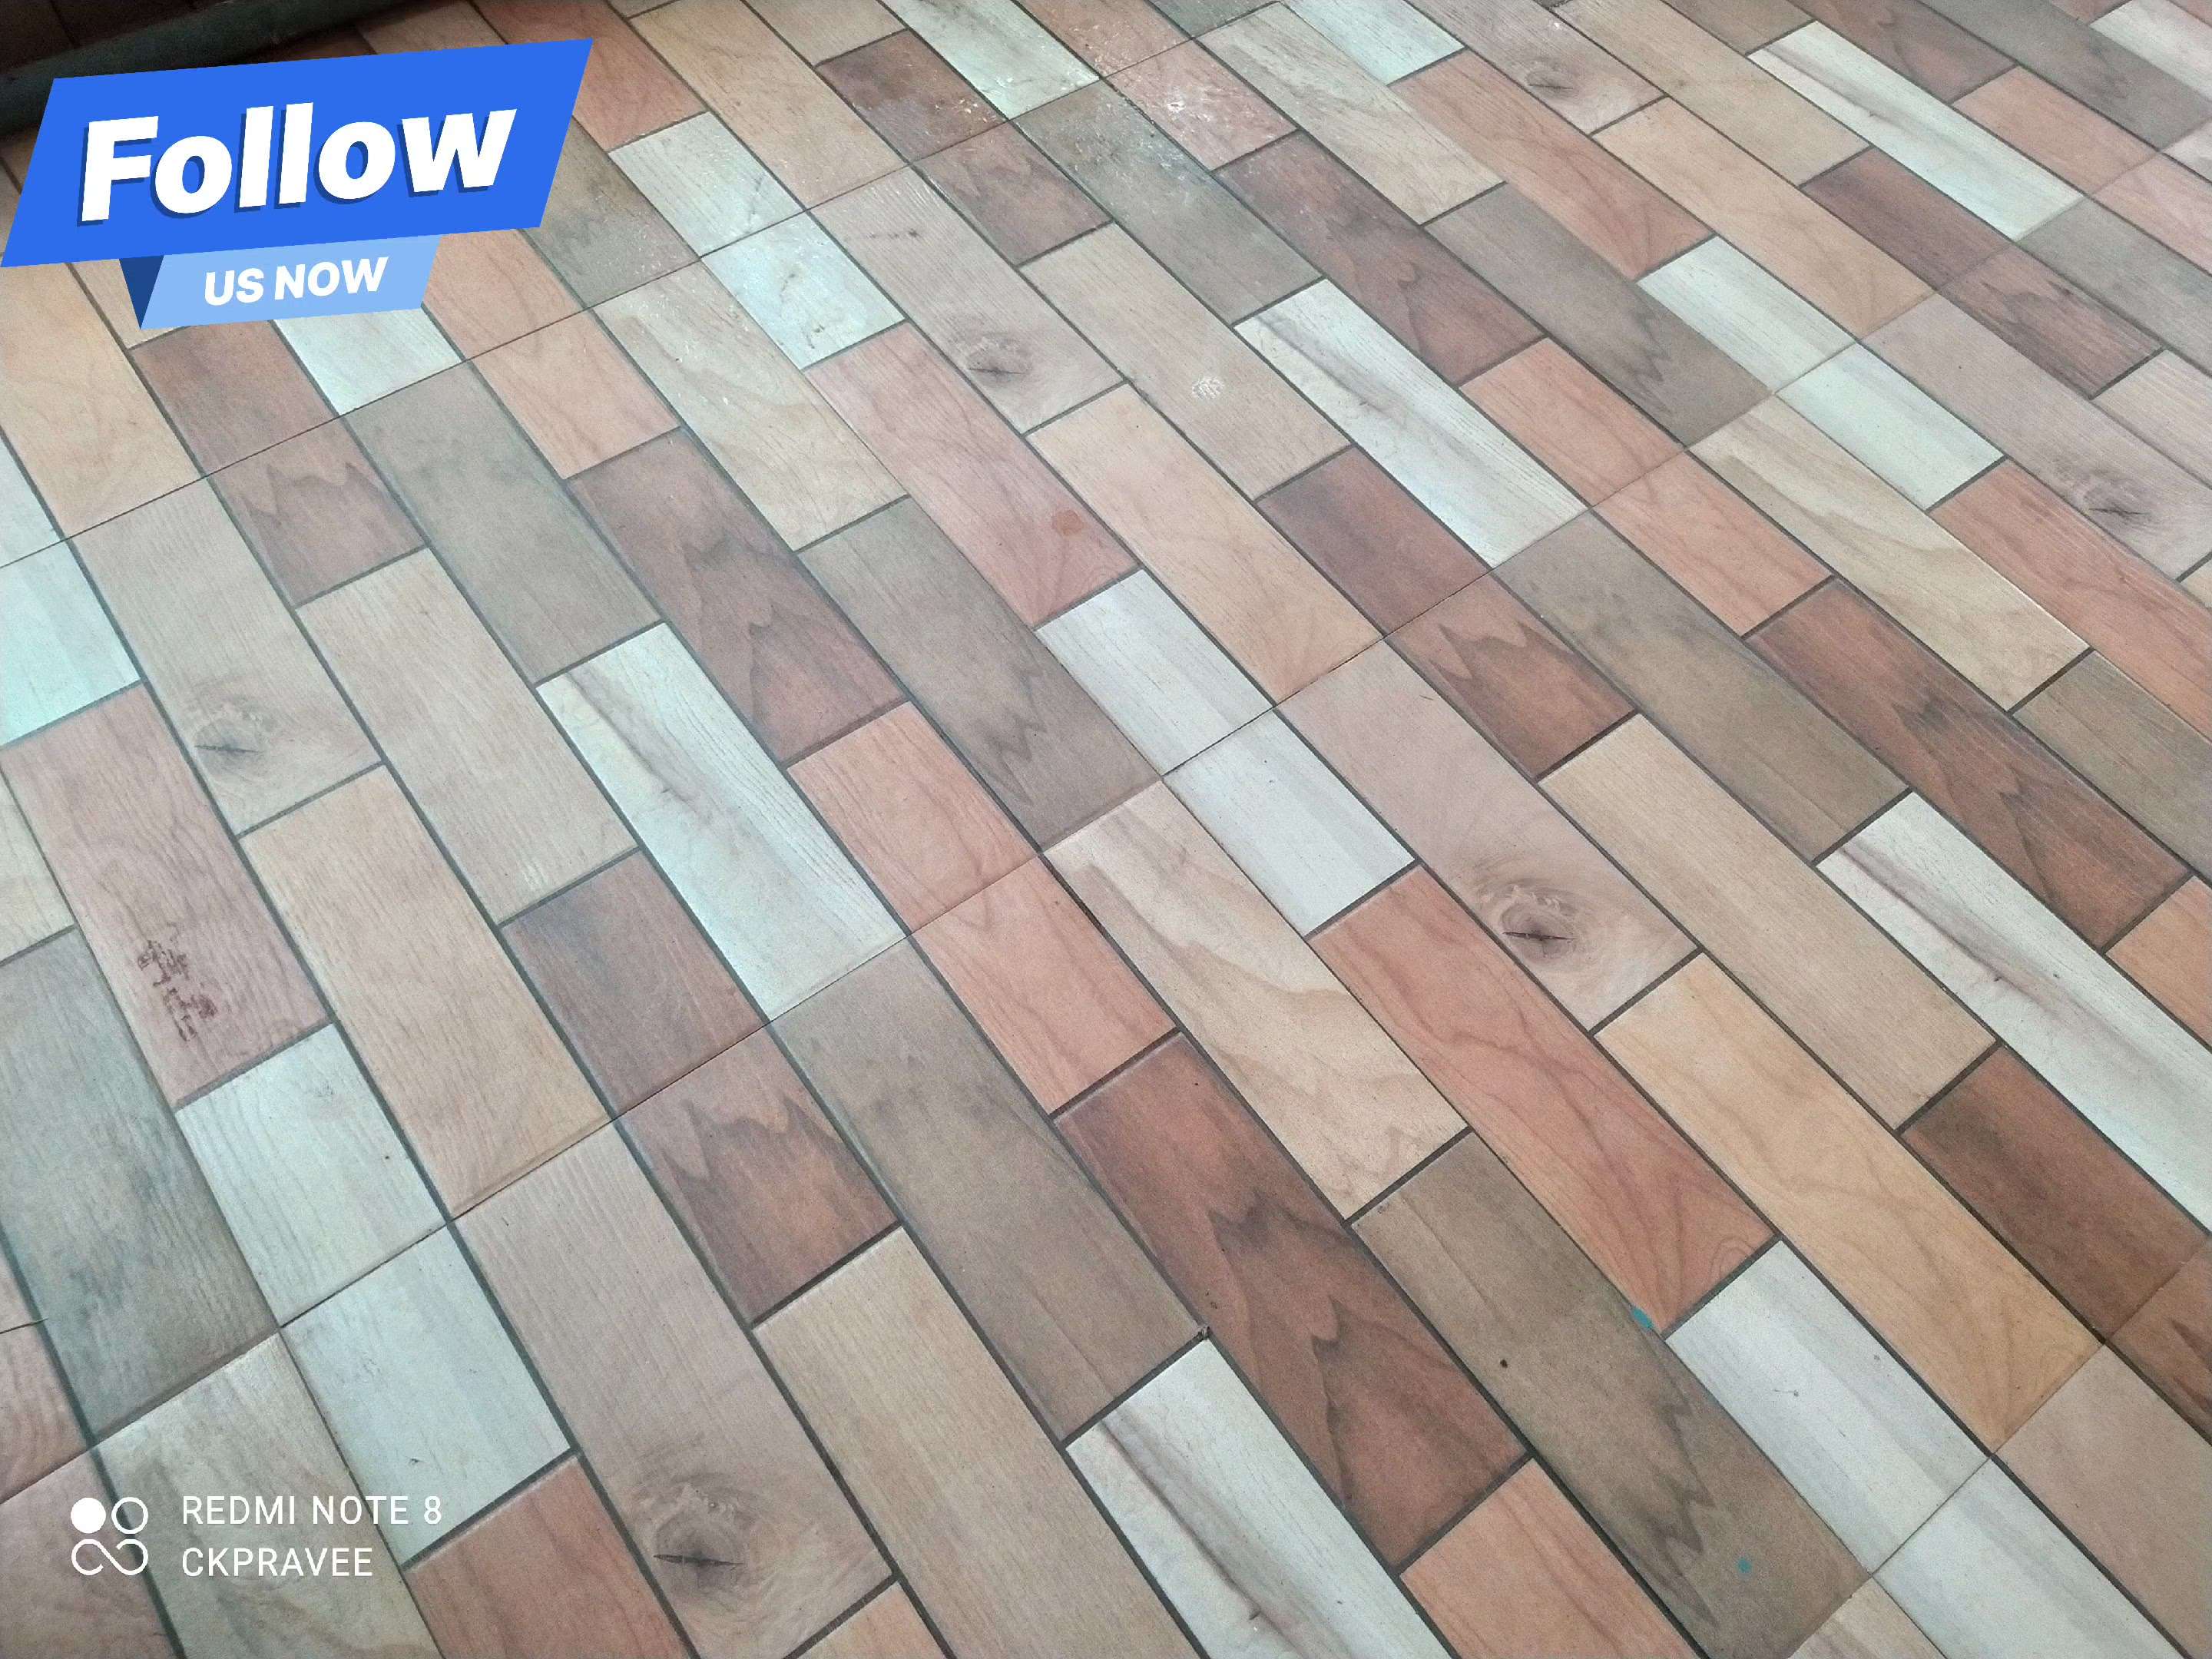 #FlooringTiles
#tiles
#trends
#trendig